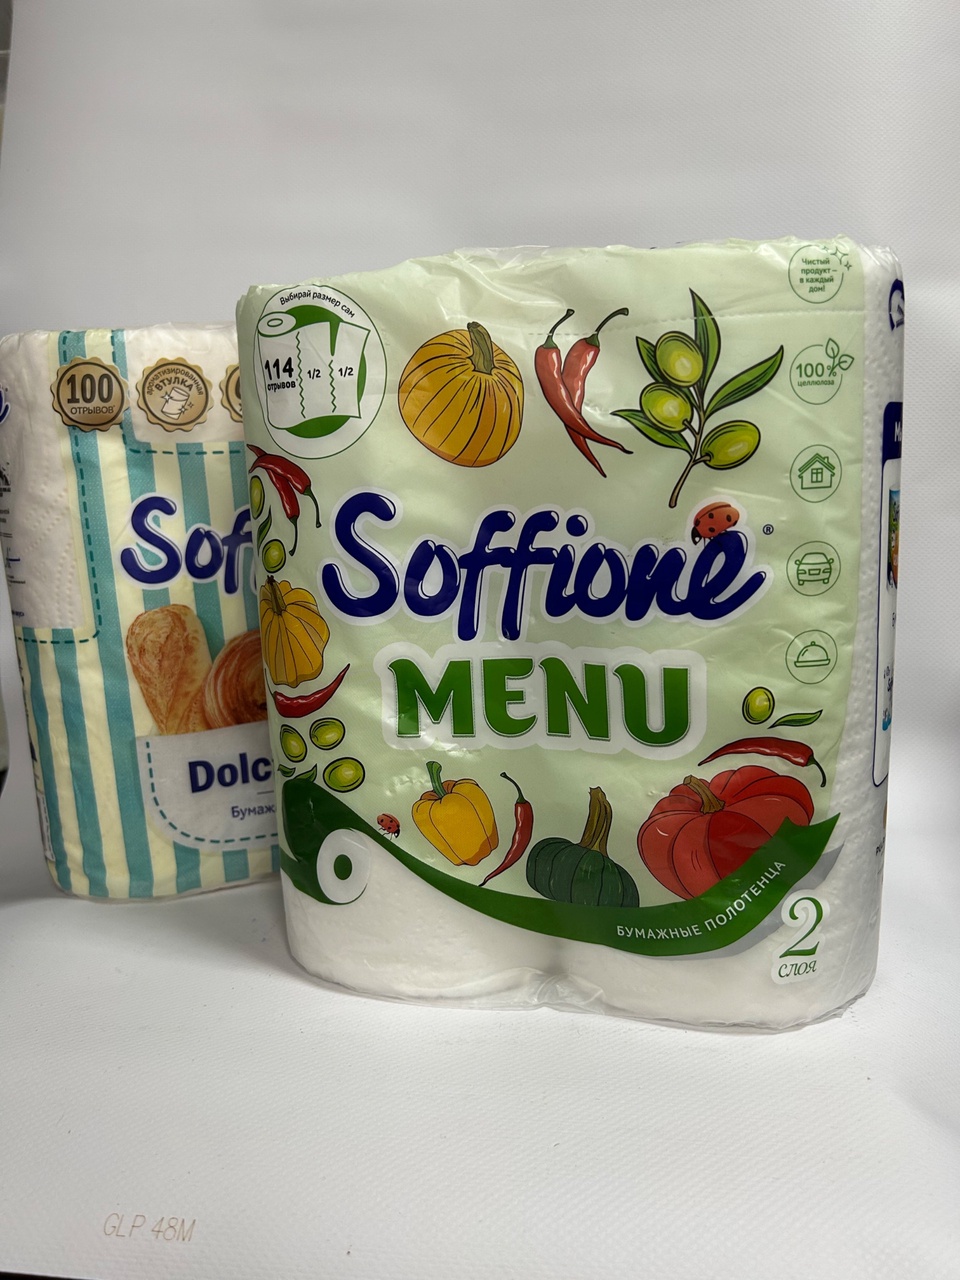 Бумажные полотенца Soffione “Menu” - 130 ₽, заказать онлайн.